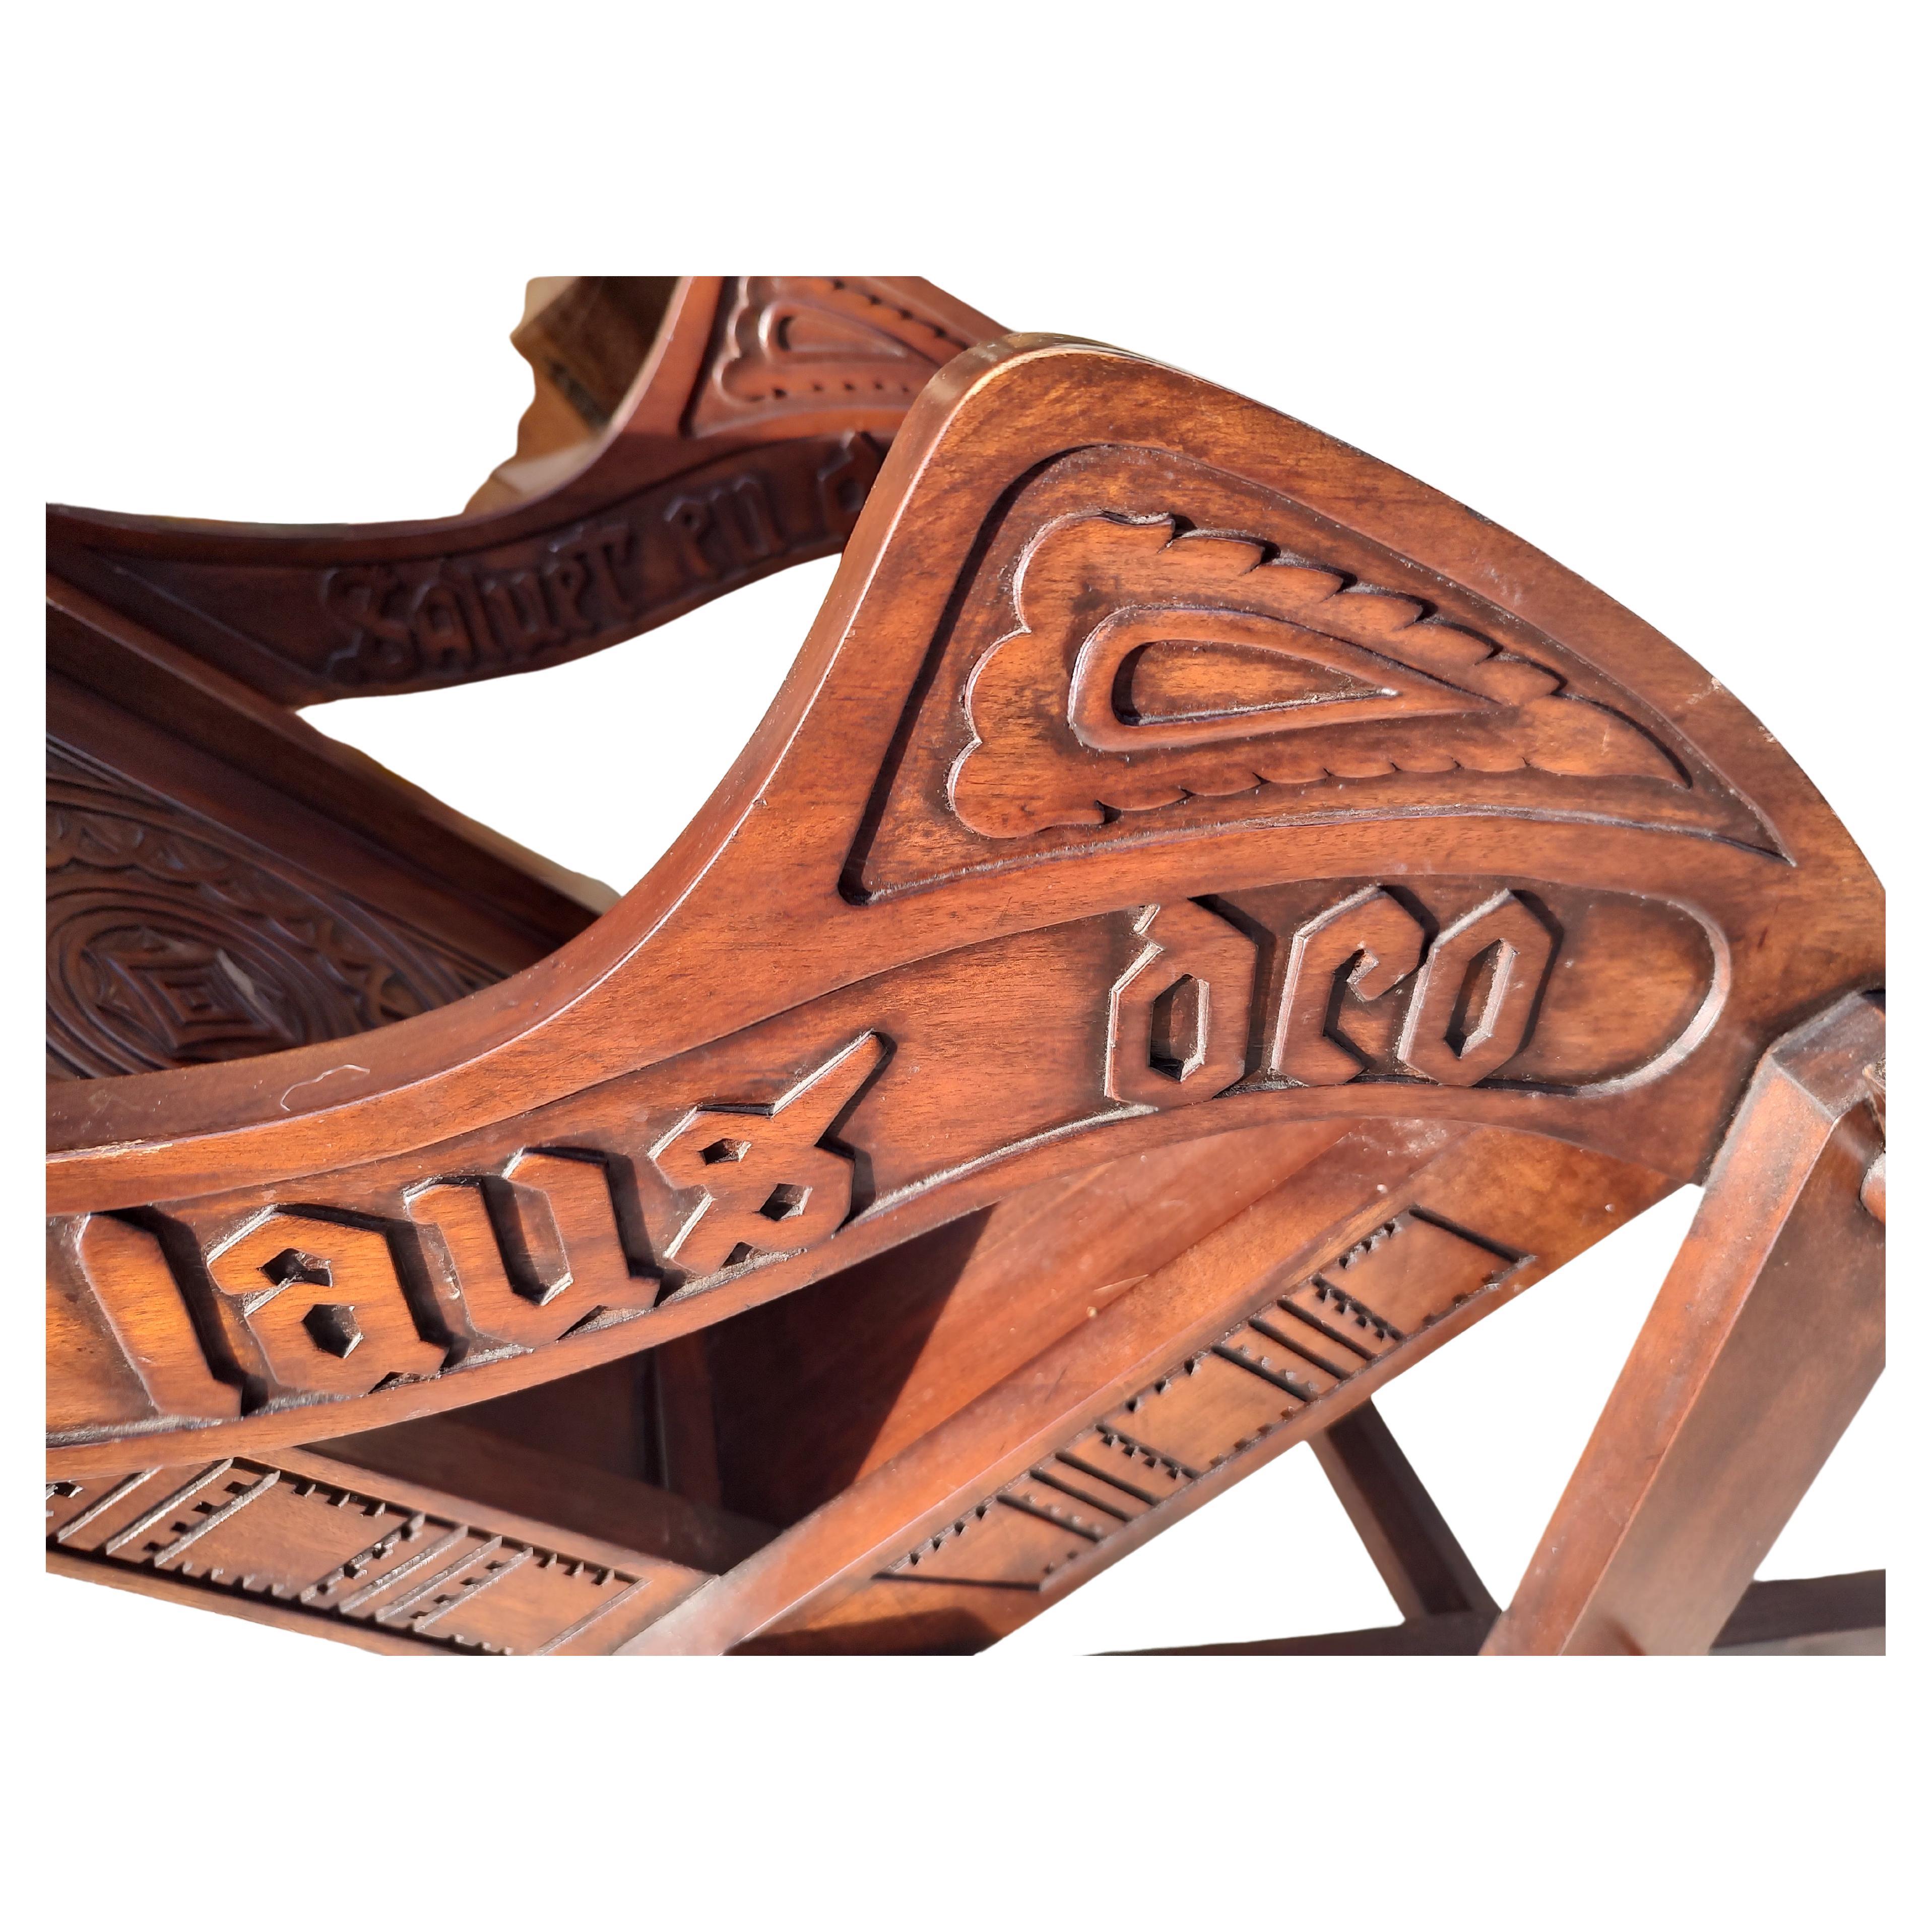 Fabuleuse paire de fauteuils Glastonbury richement sculptés en acajou. Des inscriptions en gras ornent les deux côtés des accoudoirs et l'intérieur du dossier des deux chaises. L'inscription est accompagnée de symboles celtiques. Toutes les pièces